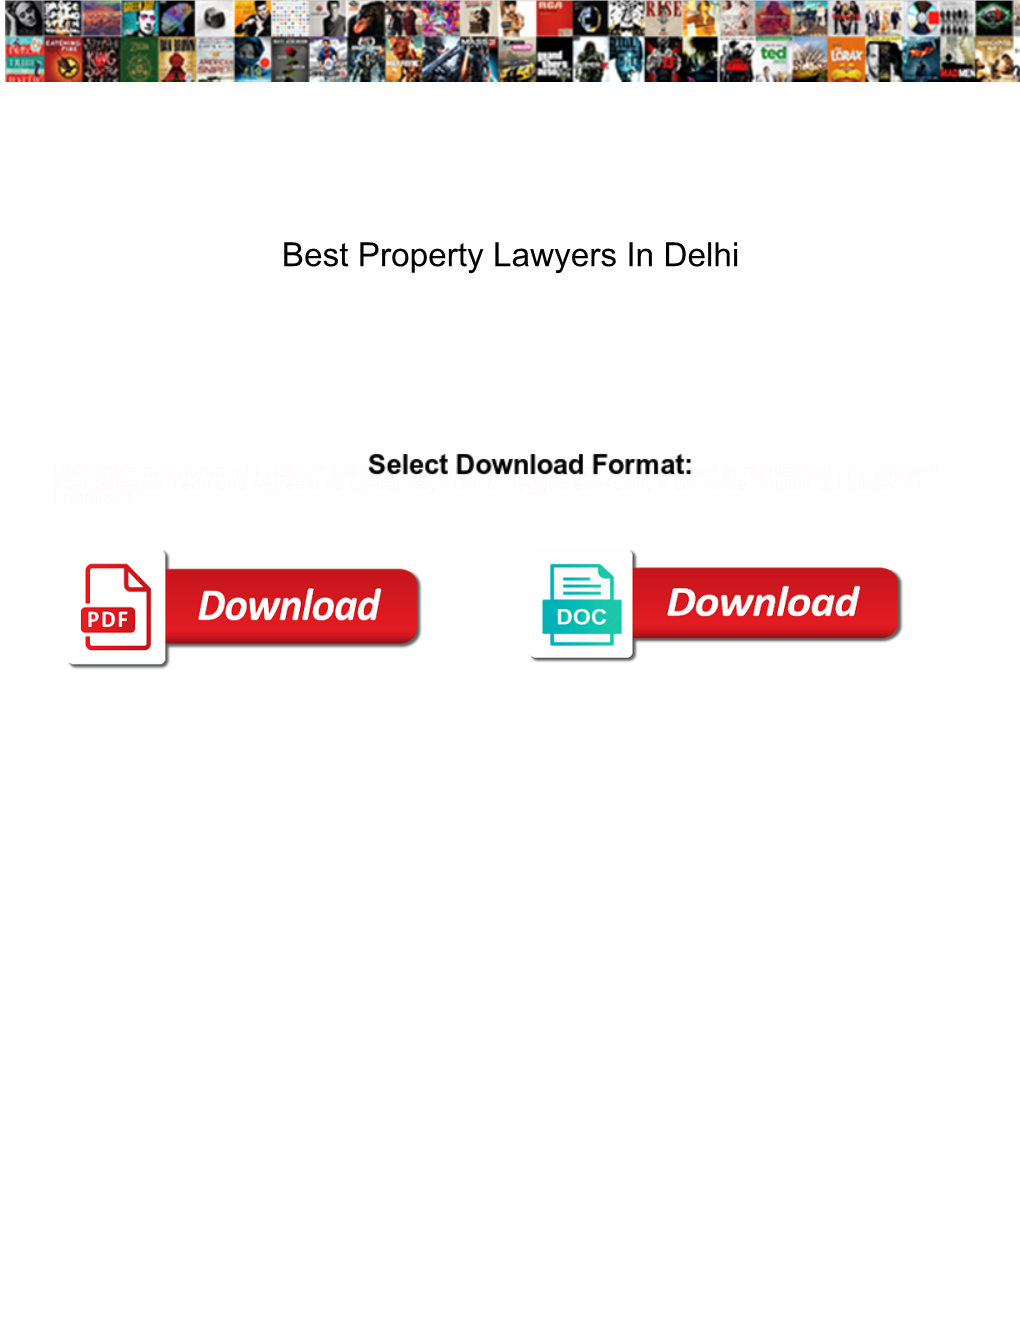 Best Property Lawyers in Delhi